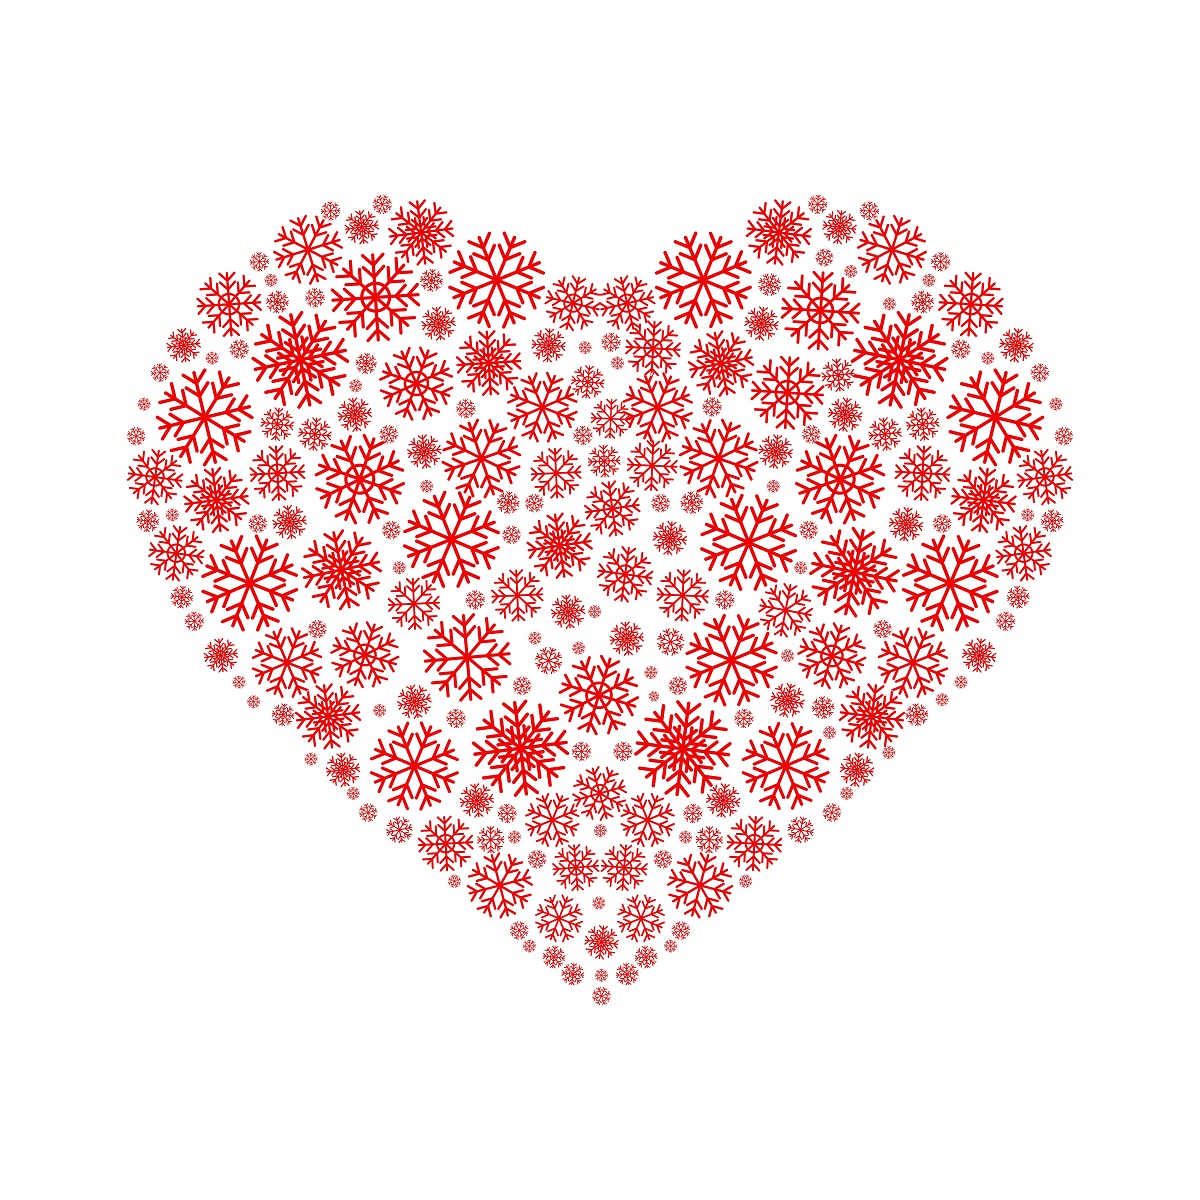 Shutterstock 1019330548 rdece snezinke oblikovane v srce